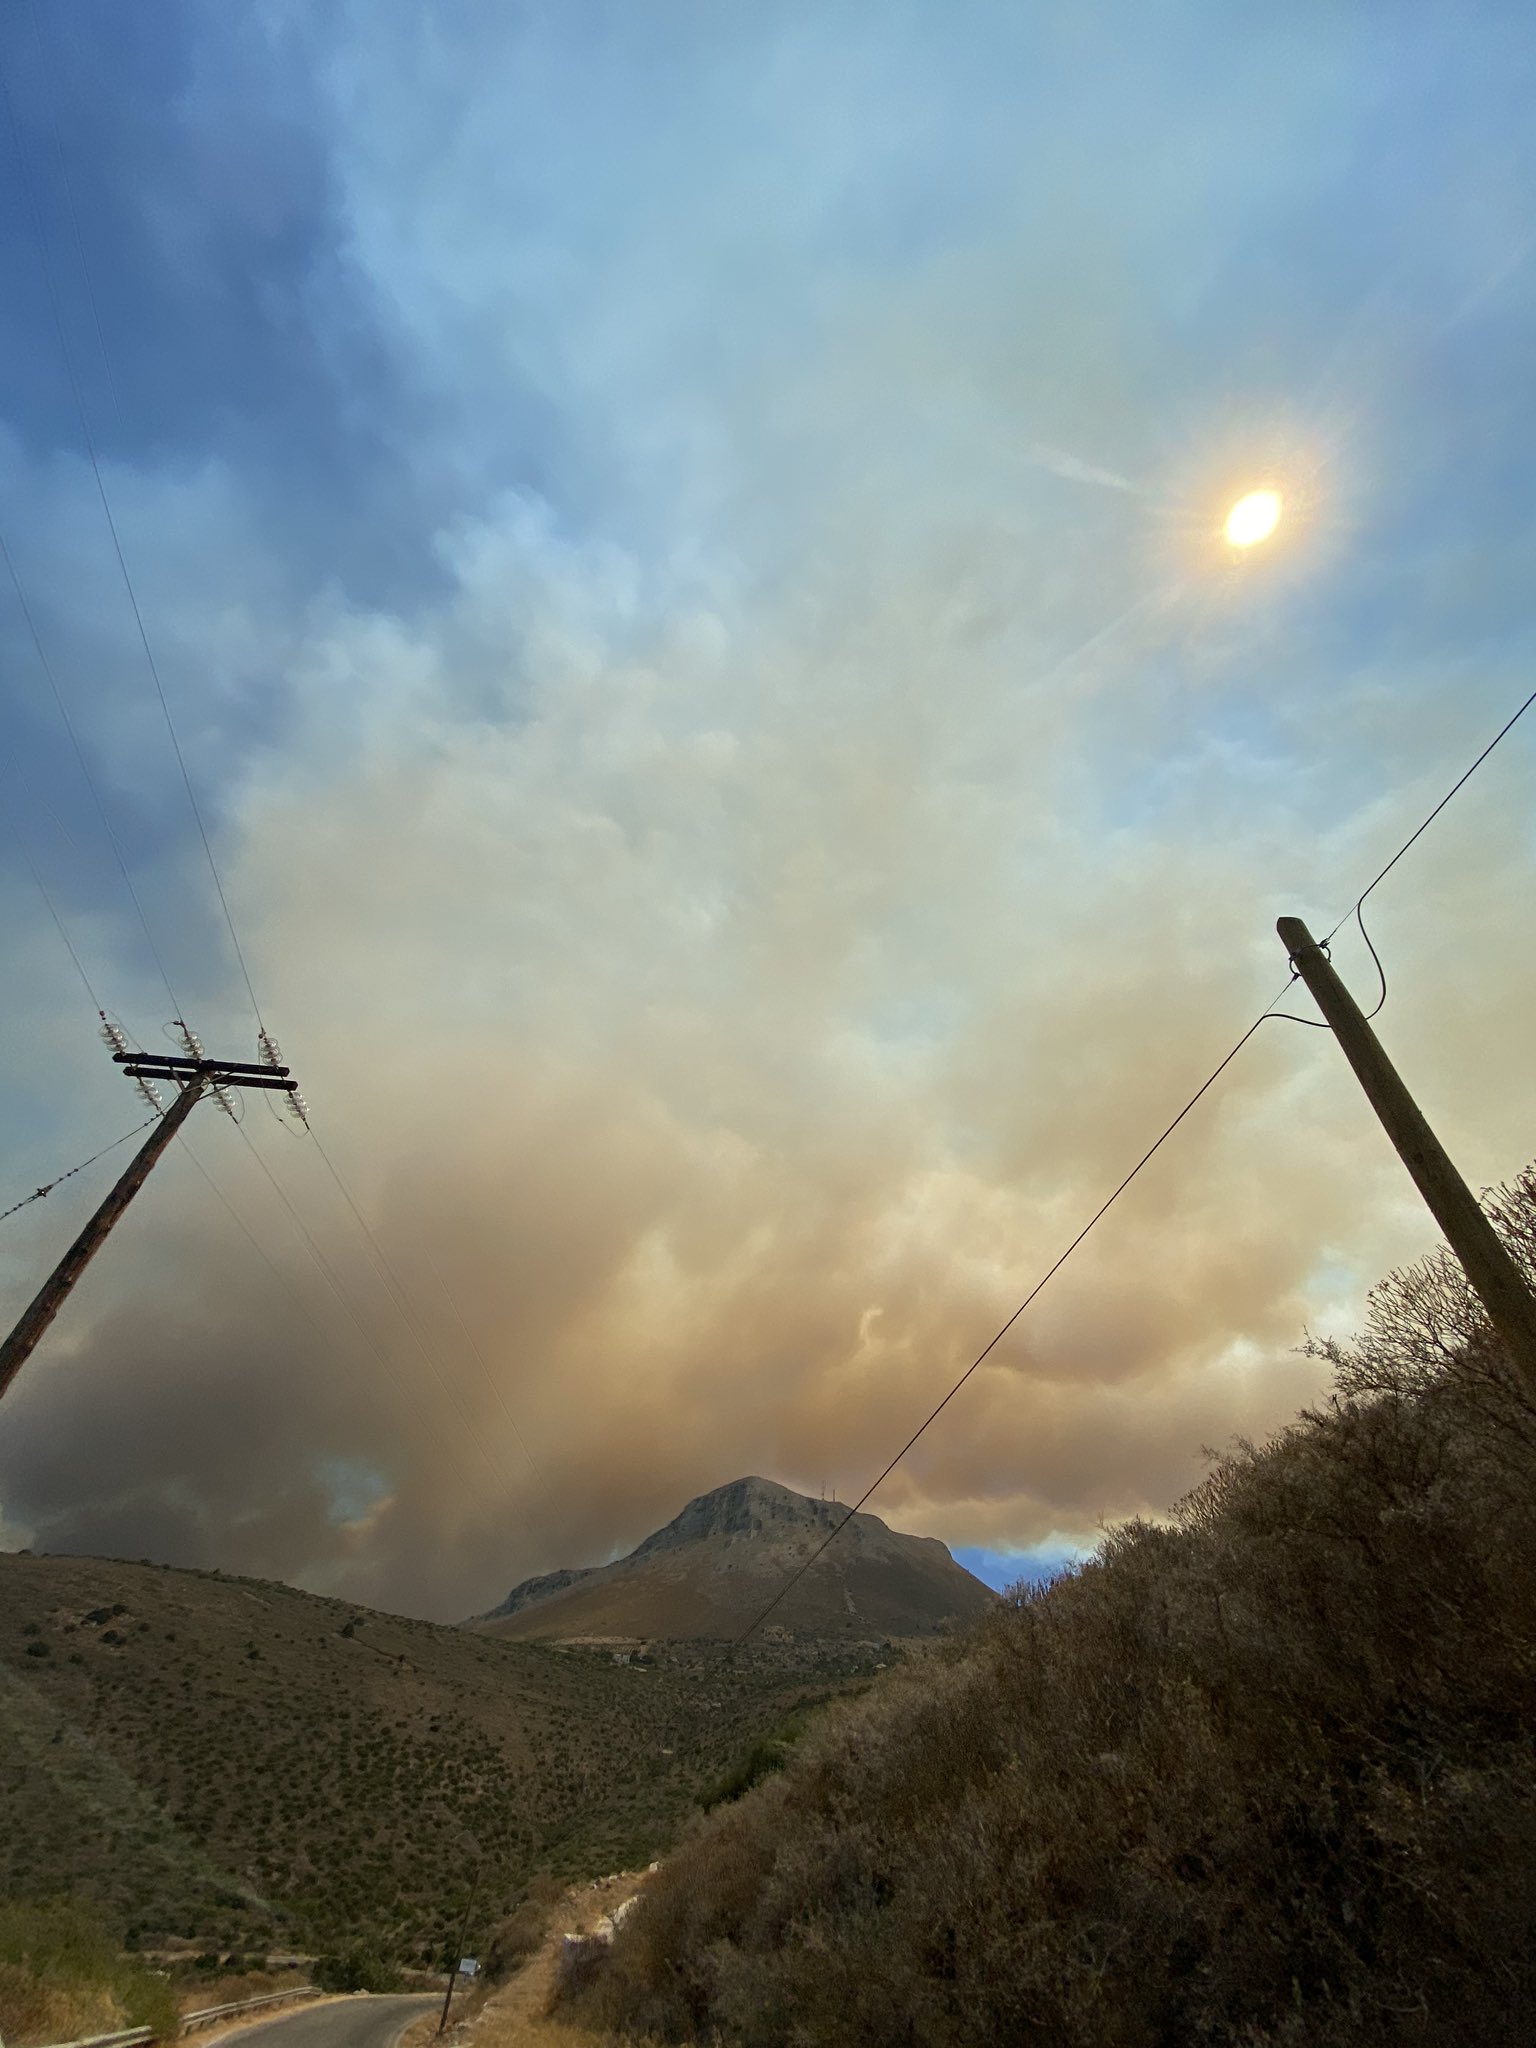 Πυρκαγιά στη Μάνη - Προληπτική εκκένωση σε Βάχος και Δροσοπηγή